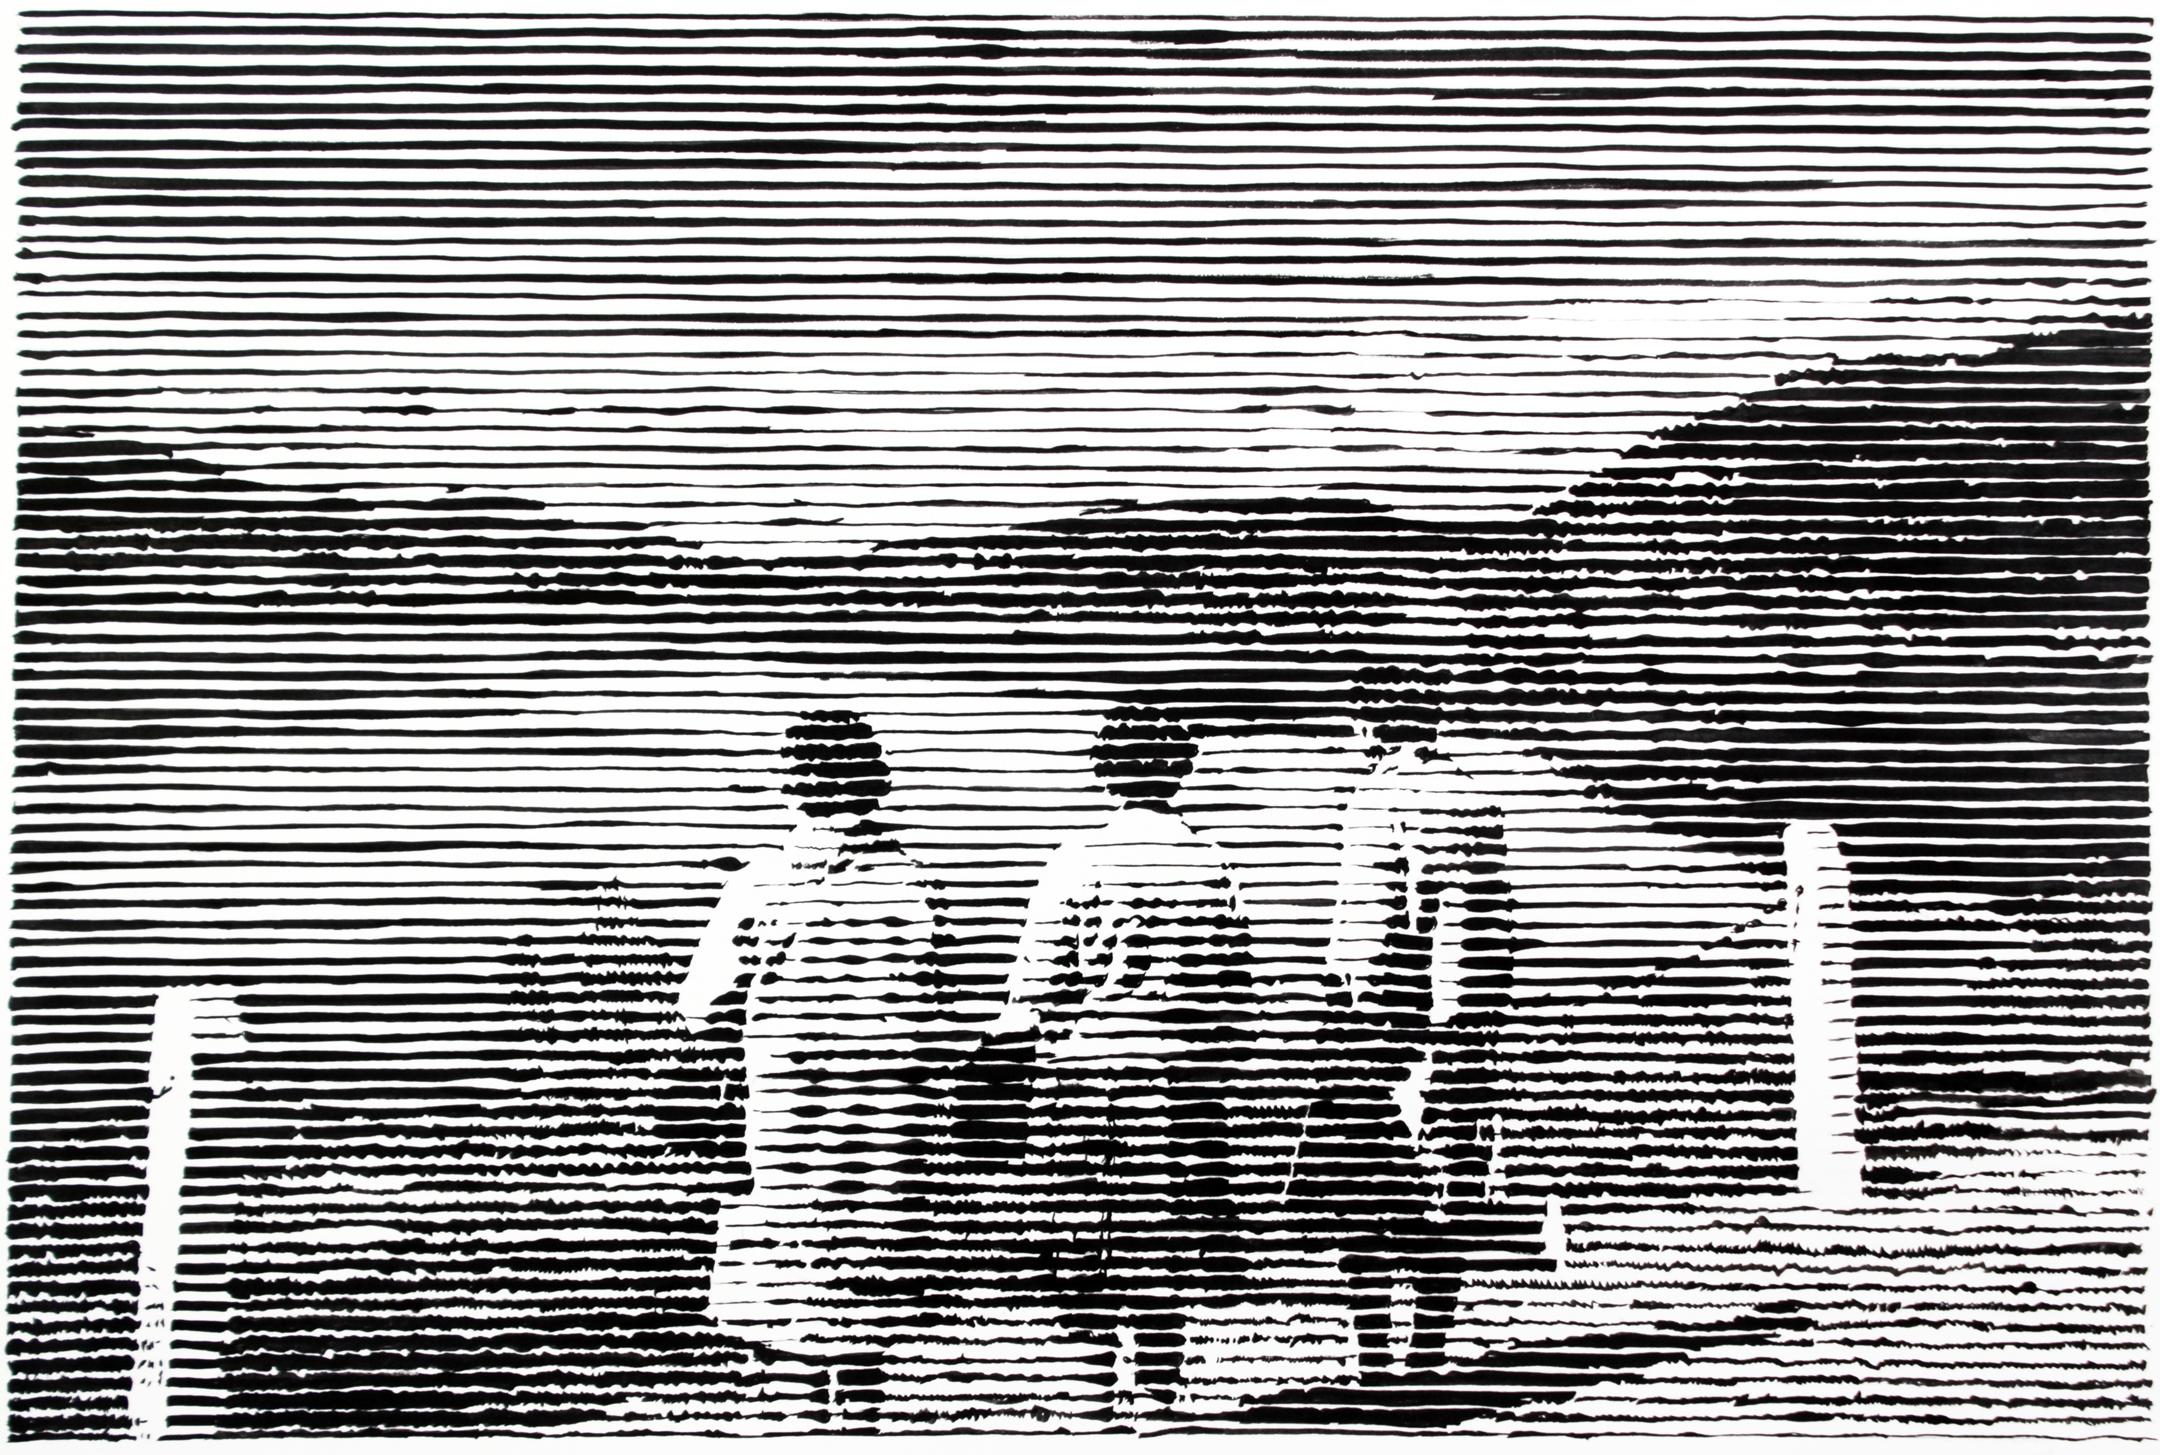 Figurative Art Charles Buckley - Trois femmes, œuvre sur papier en noir et blanc, paysage